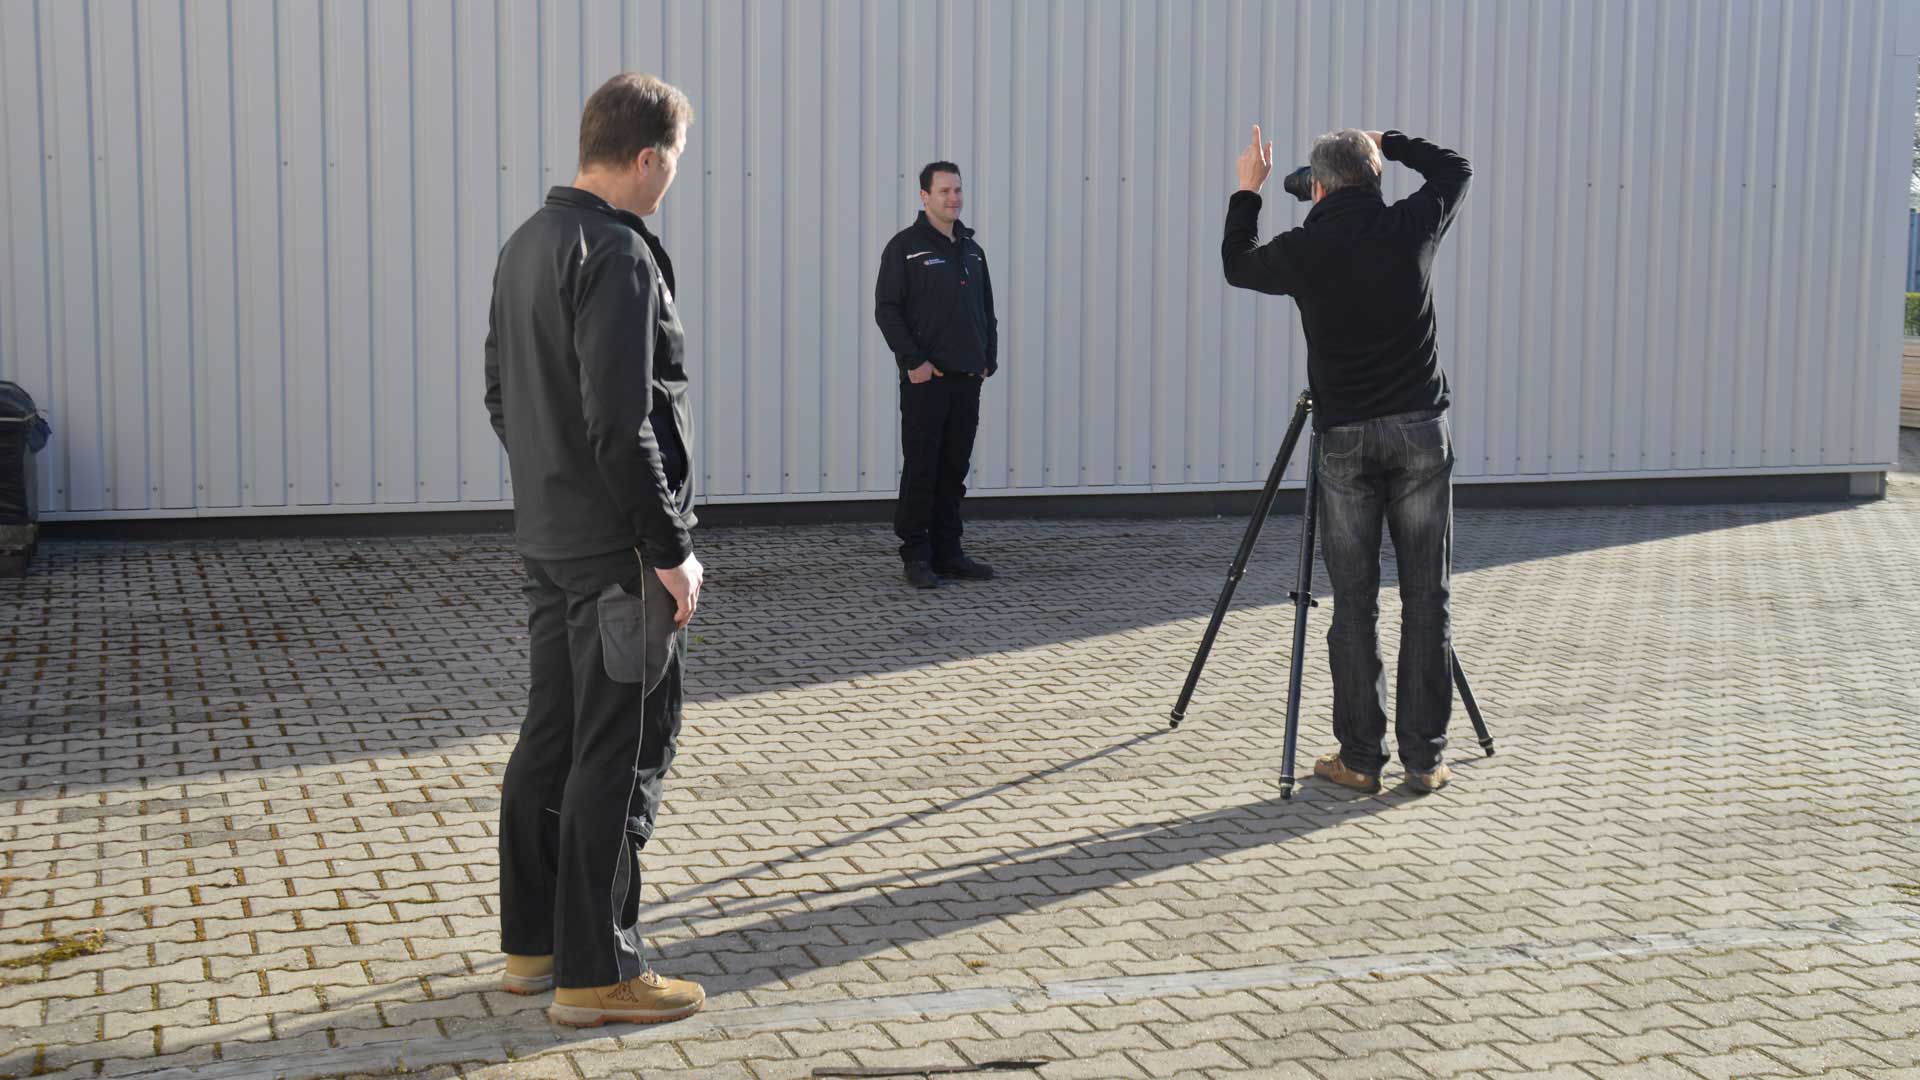 Andreas Mann fotografiert hier die Einzelfotos der Mitarbeiter von Hessels Deutschland - Making-of Teamfoto - schnell fotografieren, denn die Sonne dreht sich schnell.